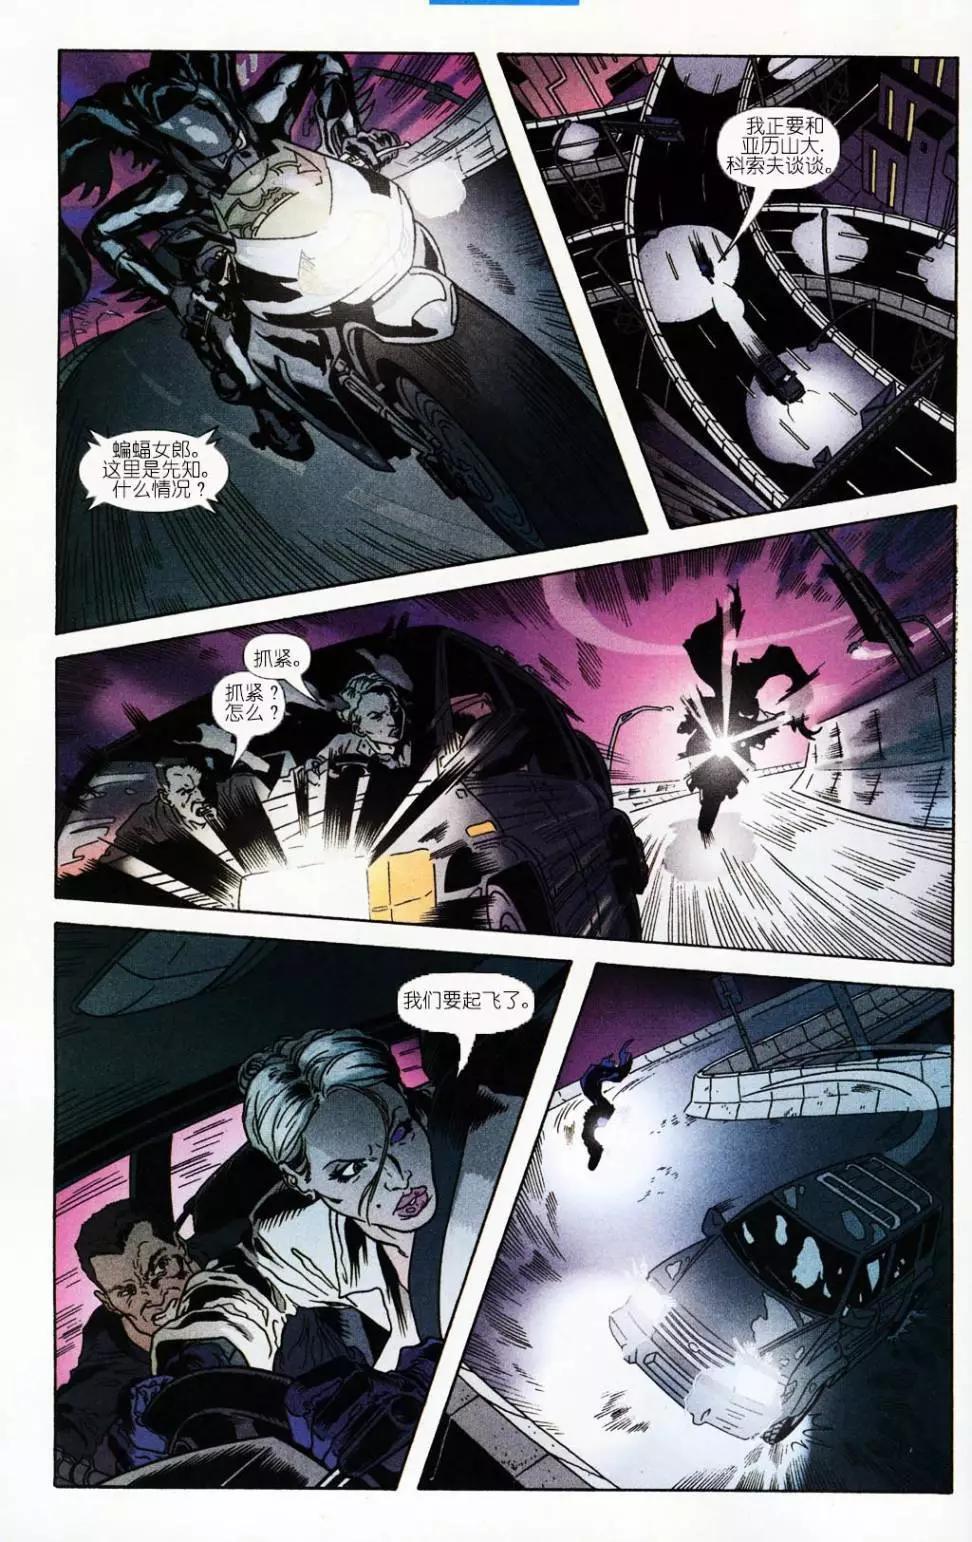 蝙蝠俠黑暗騎士傳說 - 第182卷戰爭遊戲第1第02章回 - 5